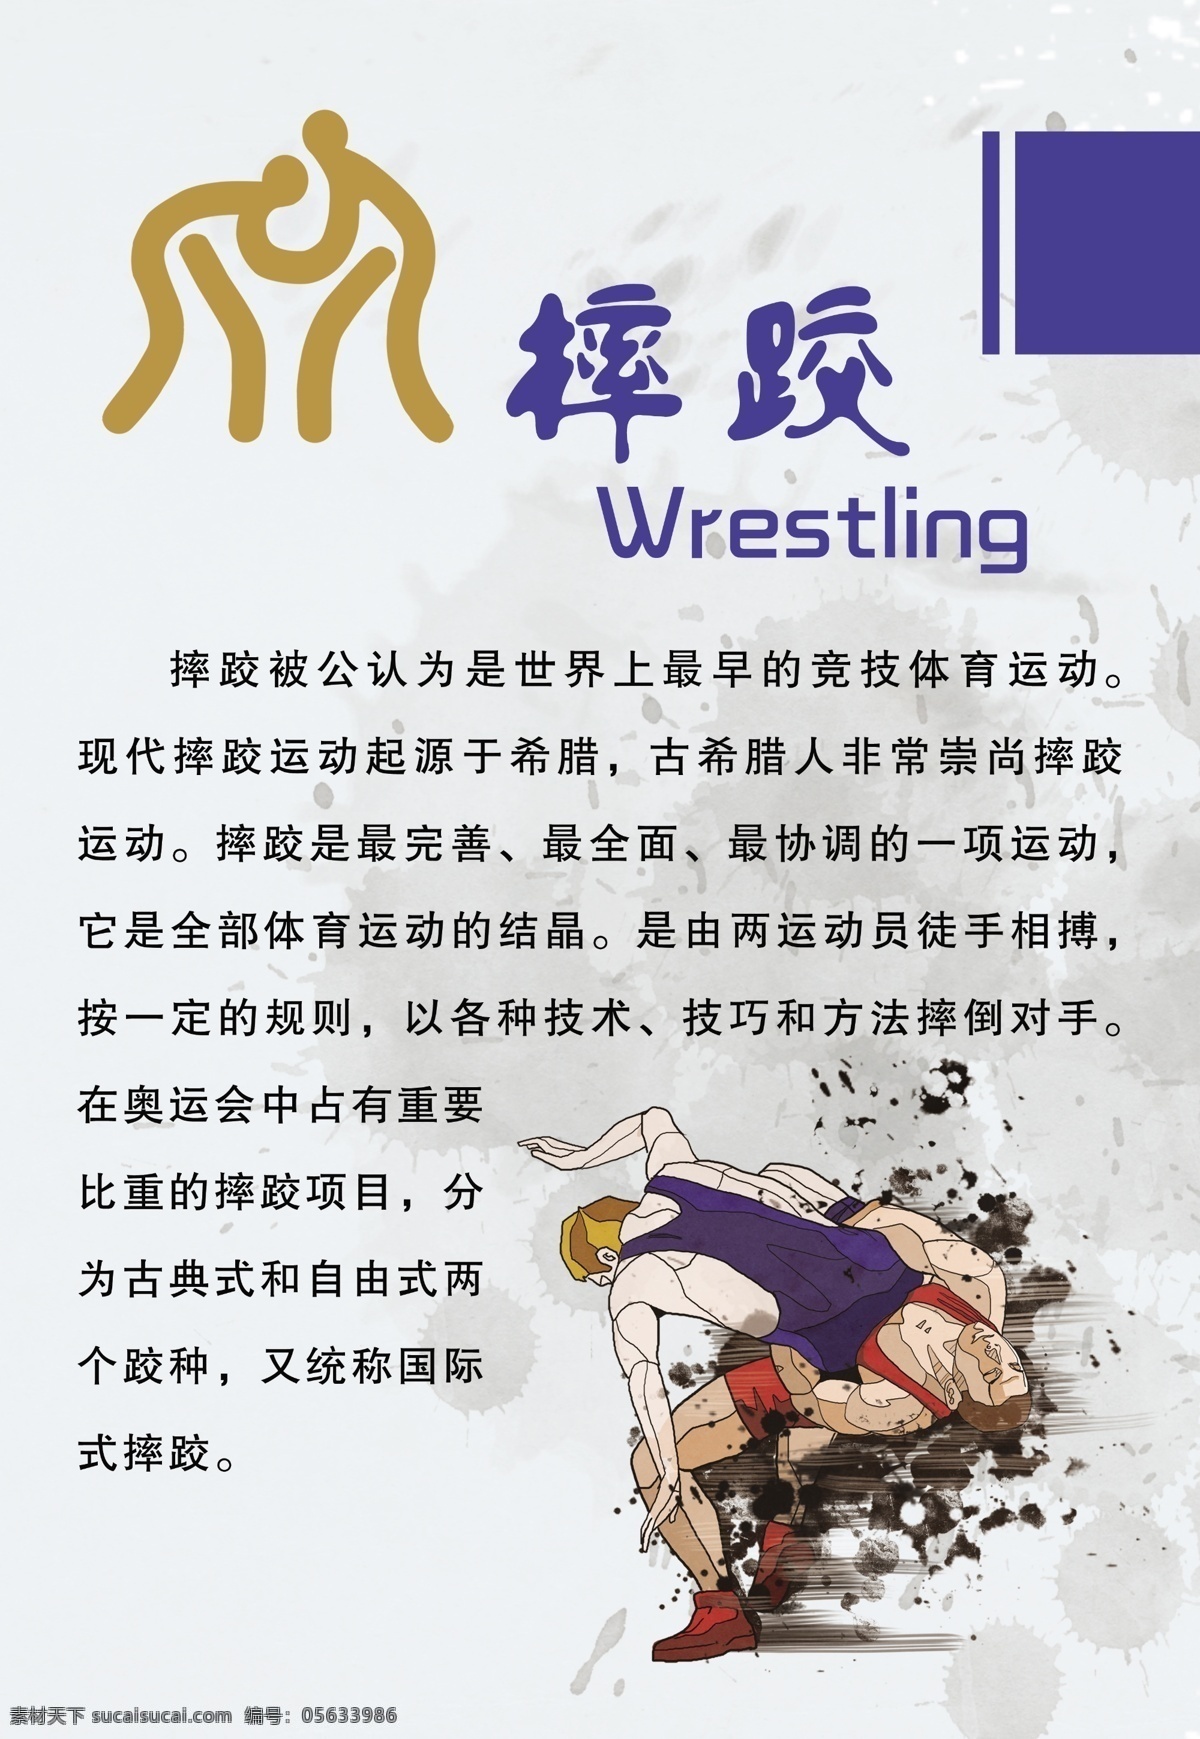 摔跤 模版下载 摔跤素材下载 摔跤模板下载 竞技体育运动 古典式 自由式 国际式 常永祥 源文件 文化艺术 体育运动